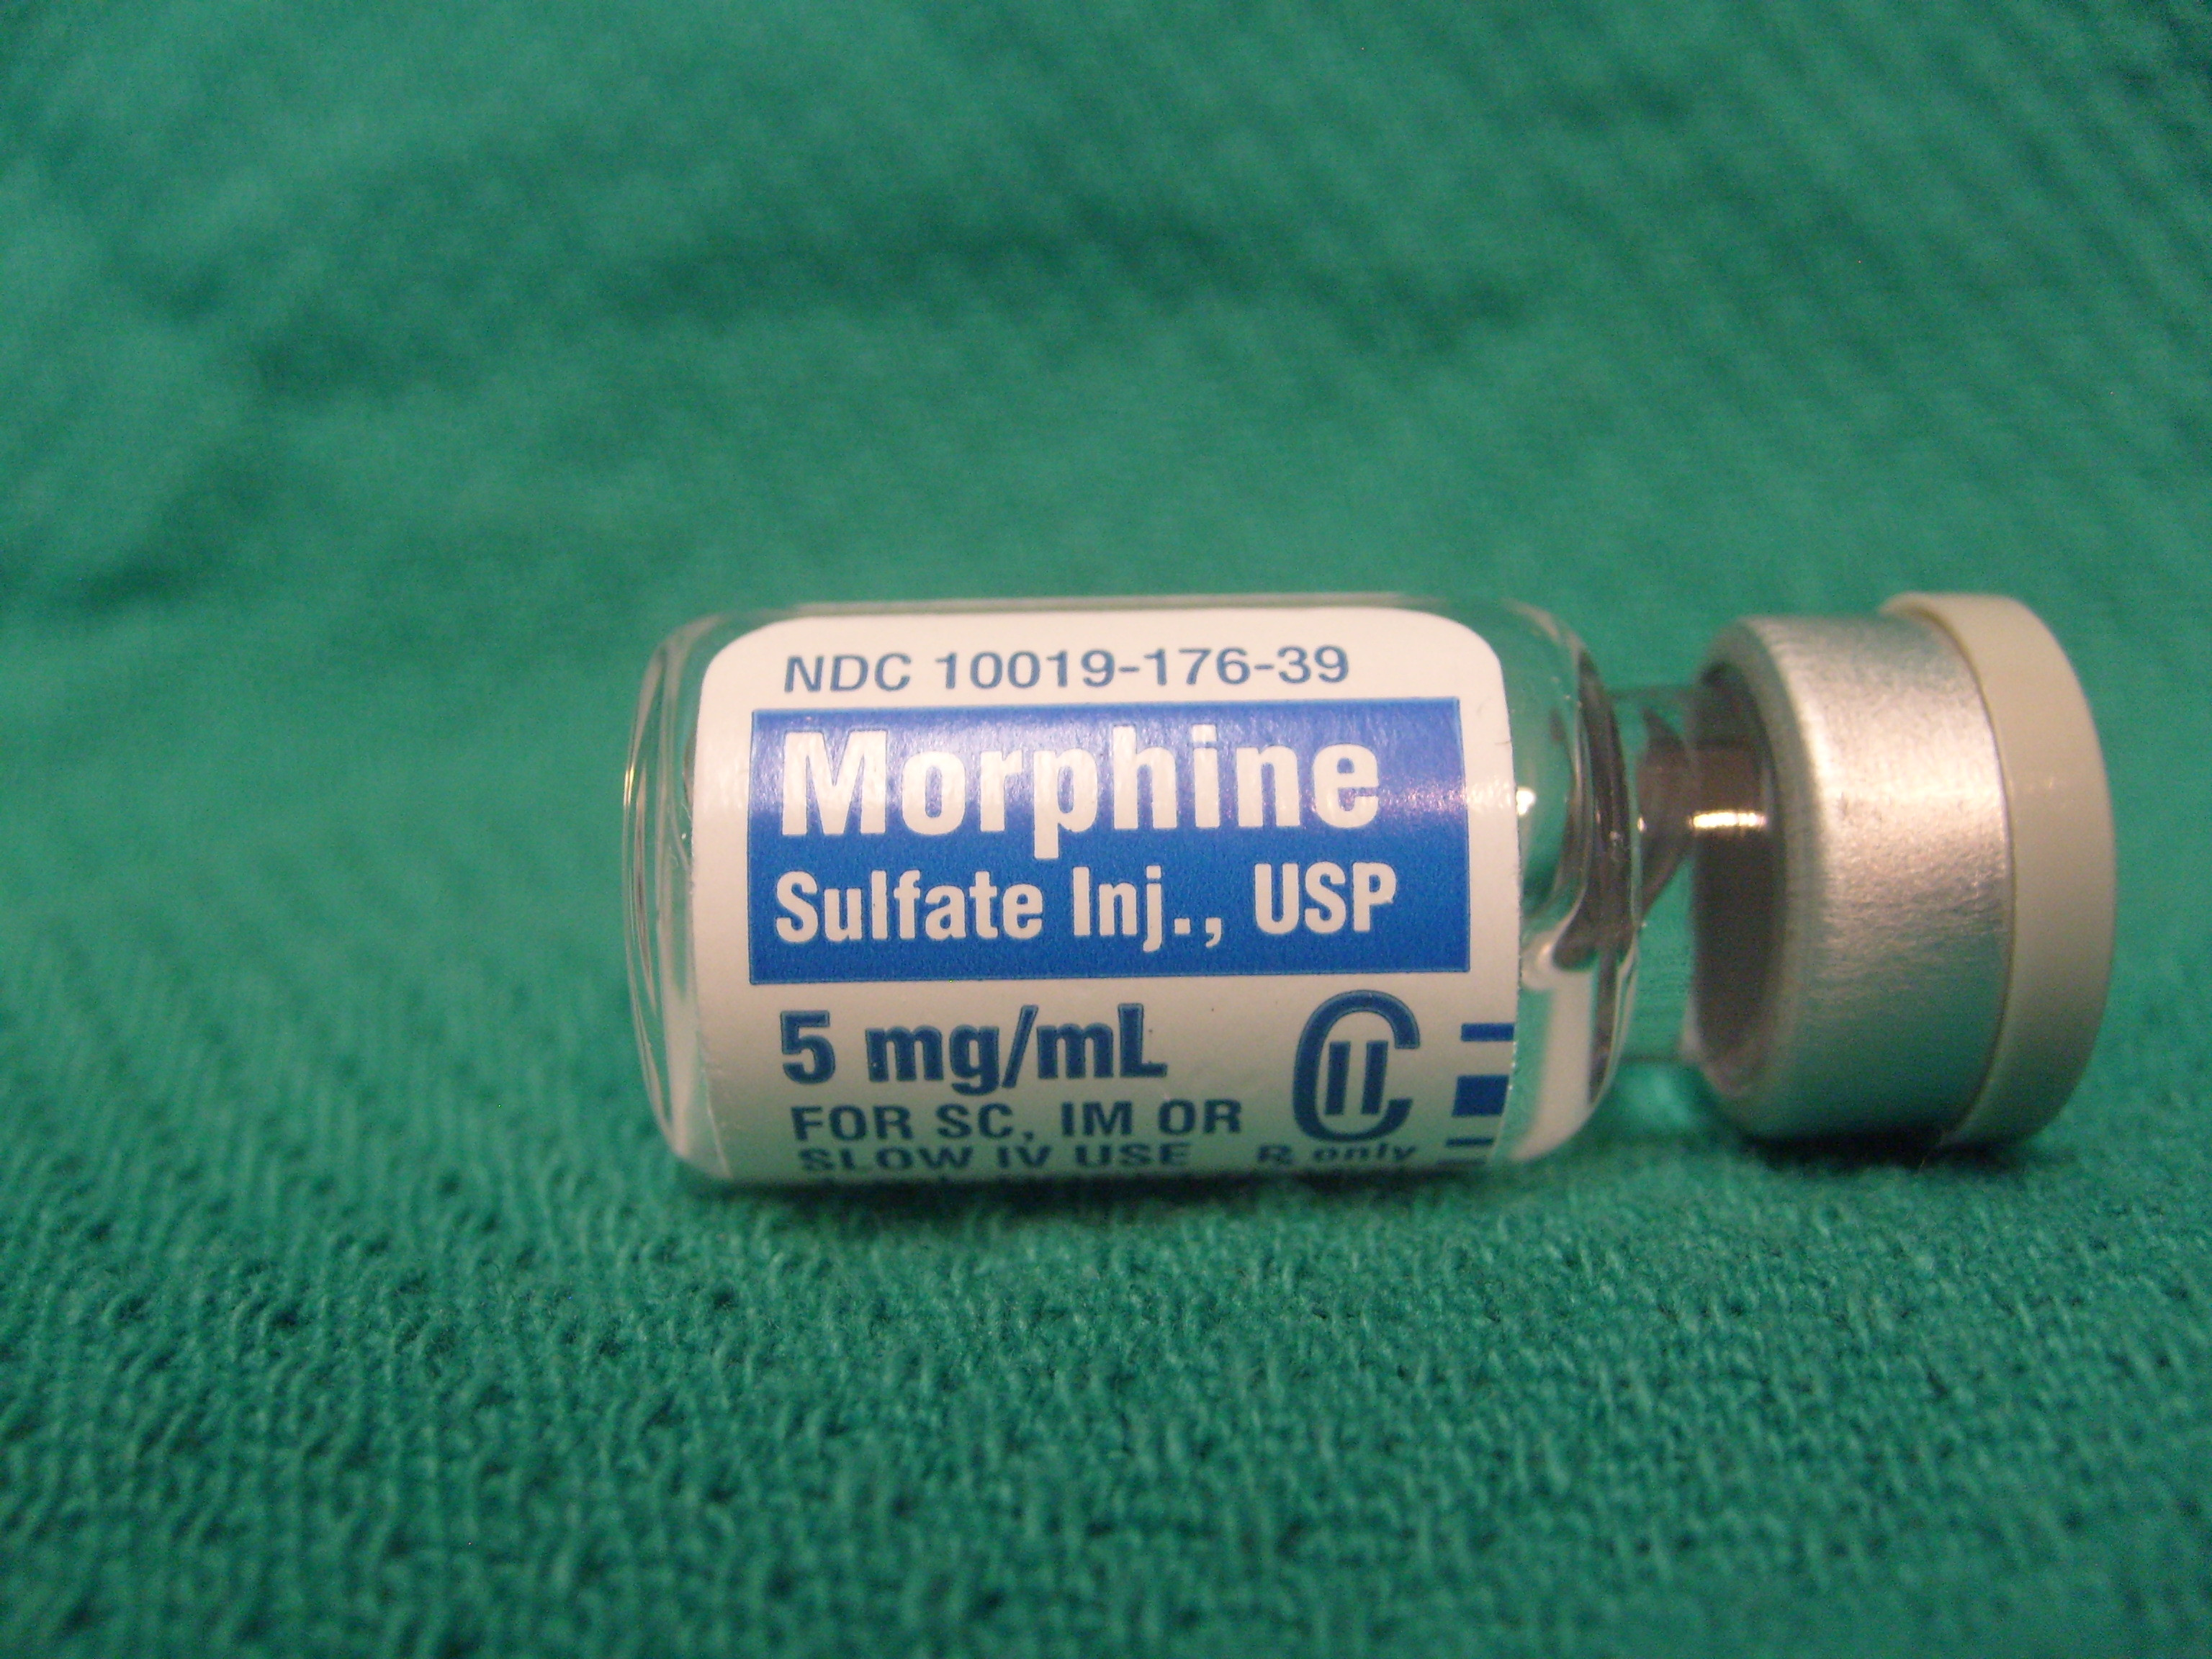 «Σκοτώνει» η έλλειψη φθηνής μορφίνης παγκοσμίως